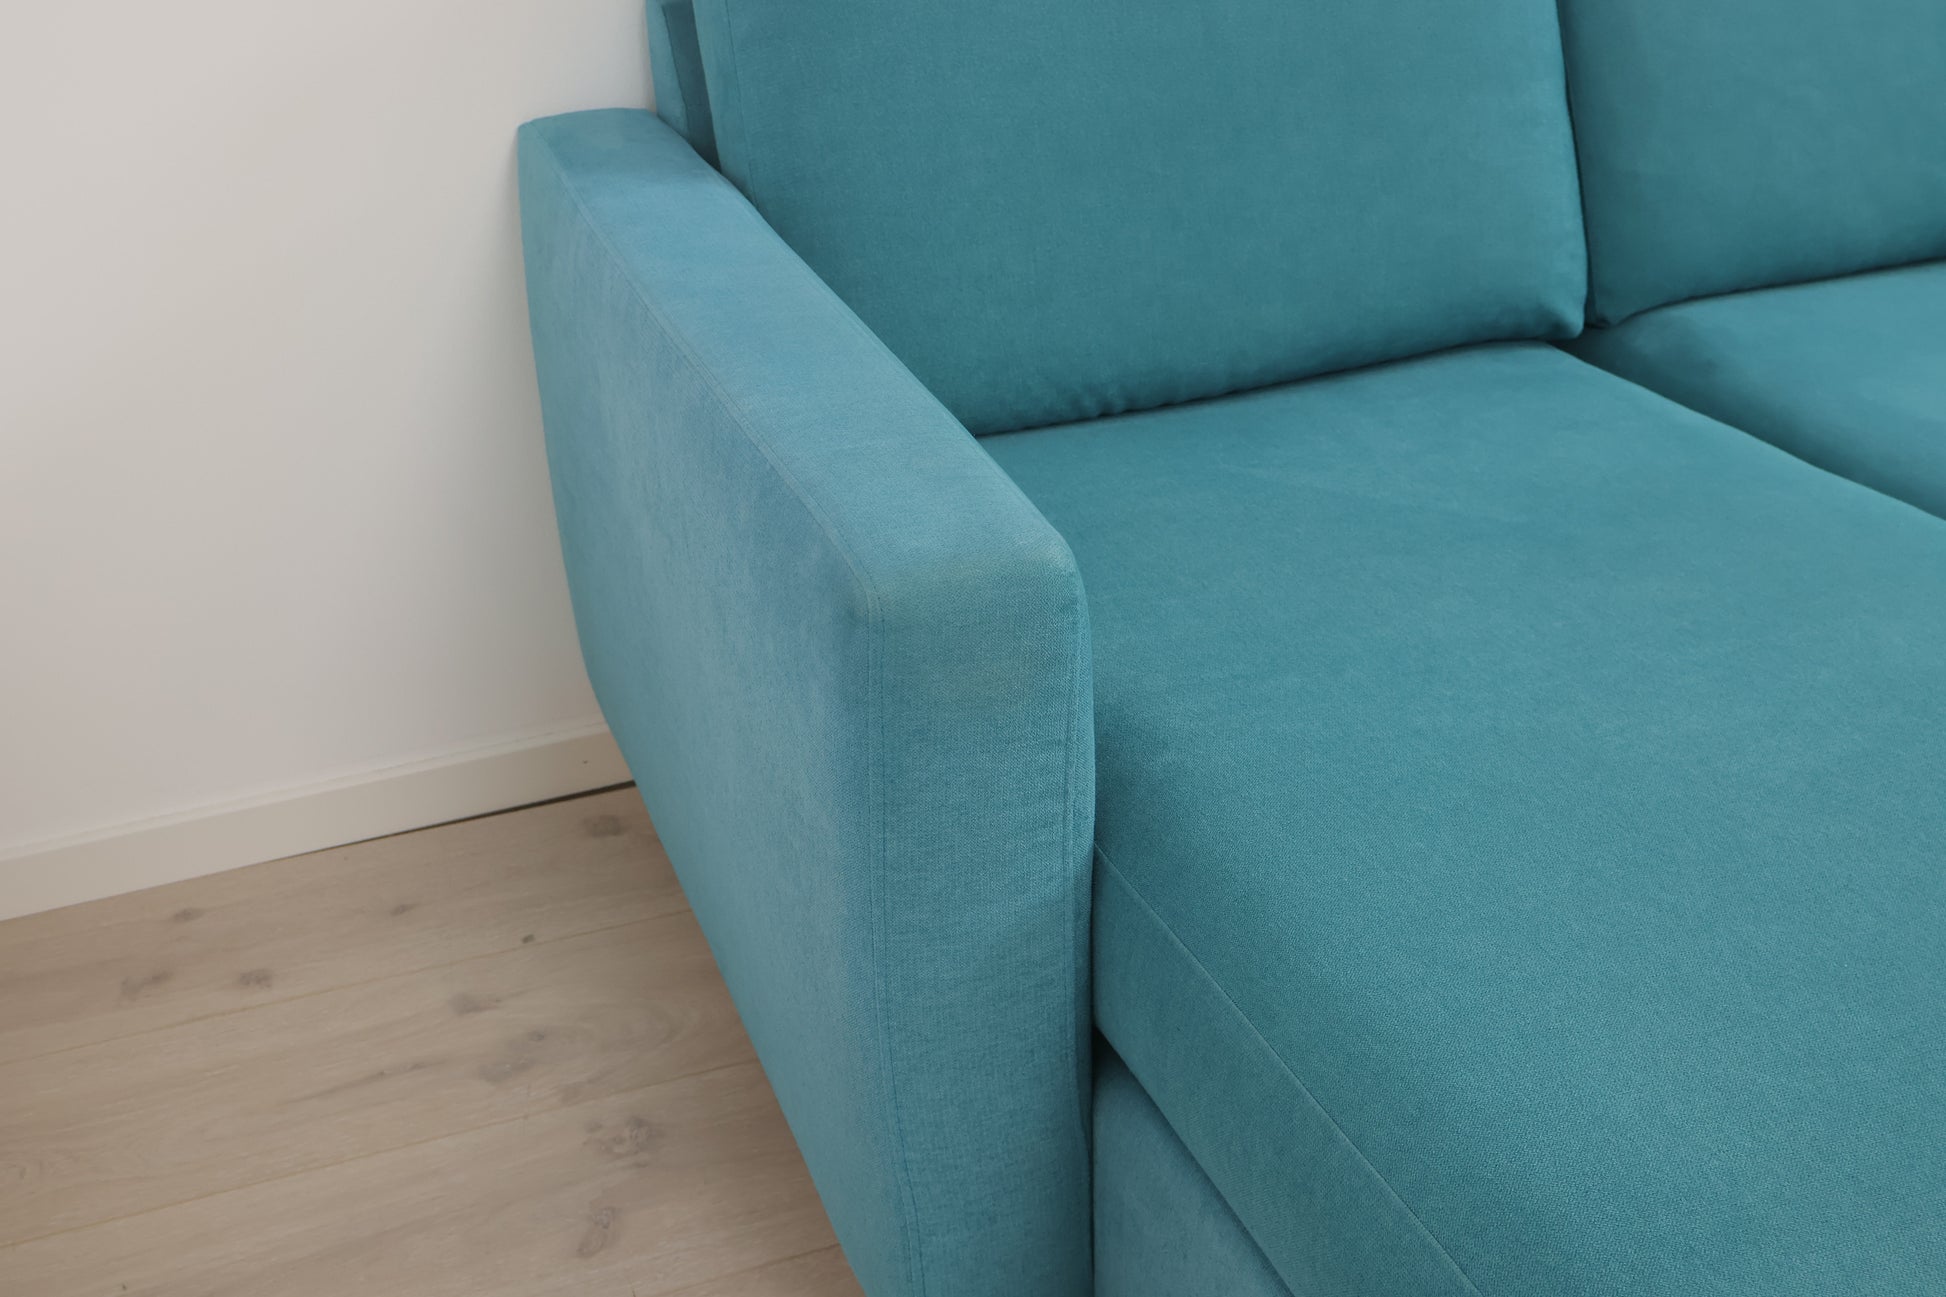 Nyrenset | Turkis u-sofa med eikebein og flyttbare nakkestøtter